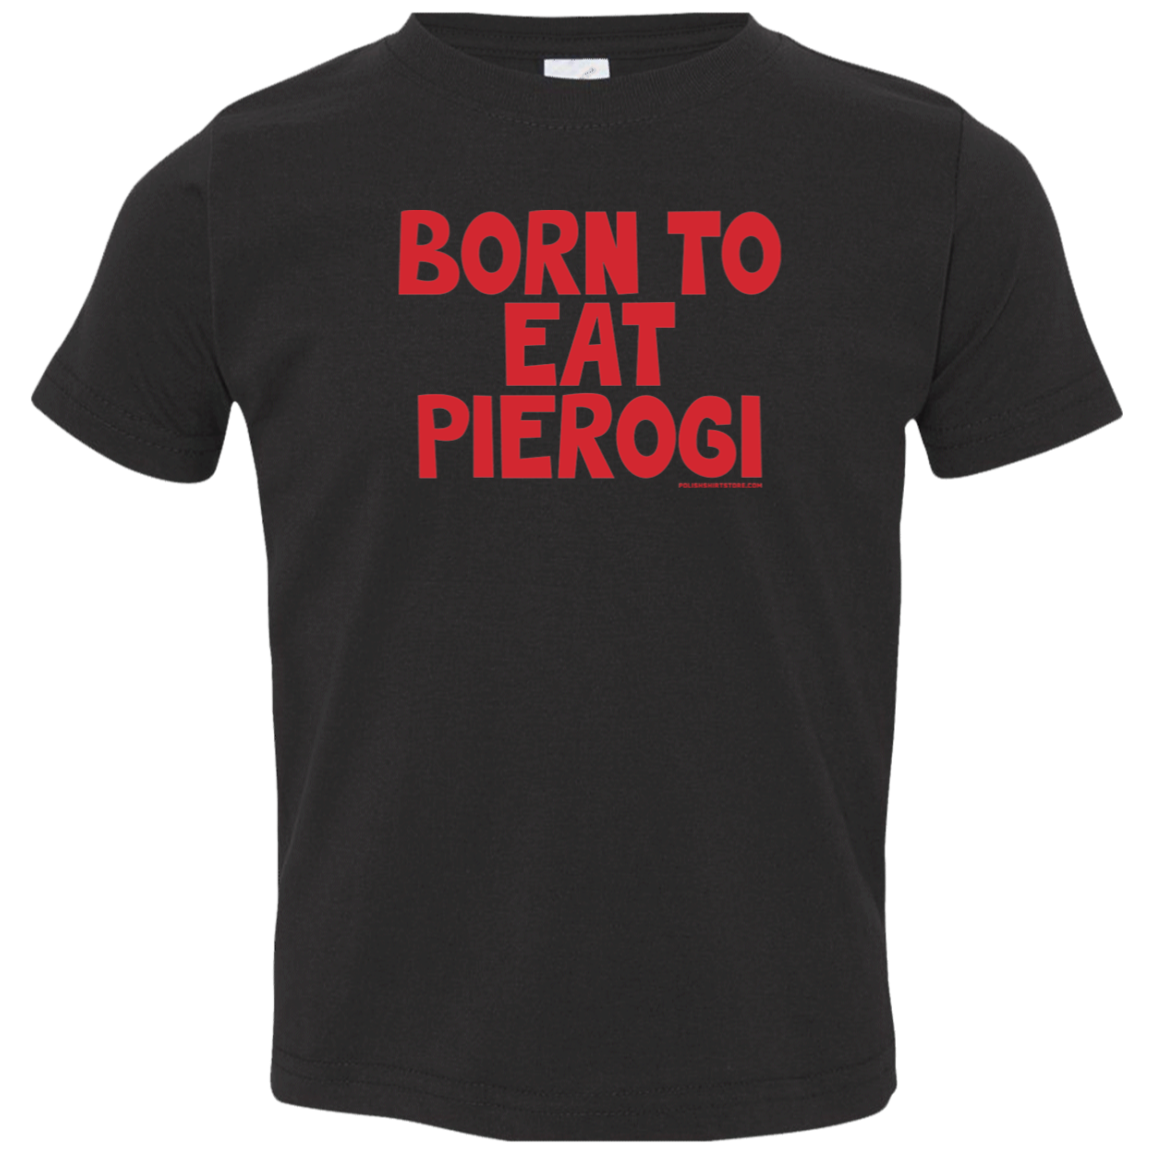 Born To Eat Pierogi Infant & Toddler T-Shirt Apparel CustomCat Toddler T-Shirt Black 2T